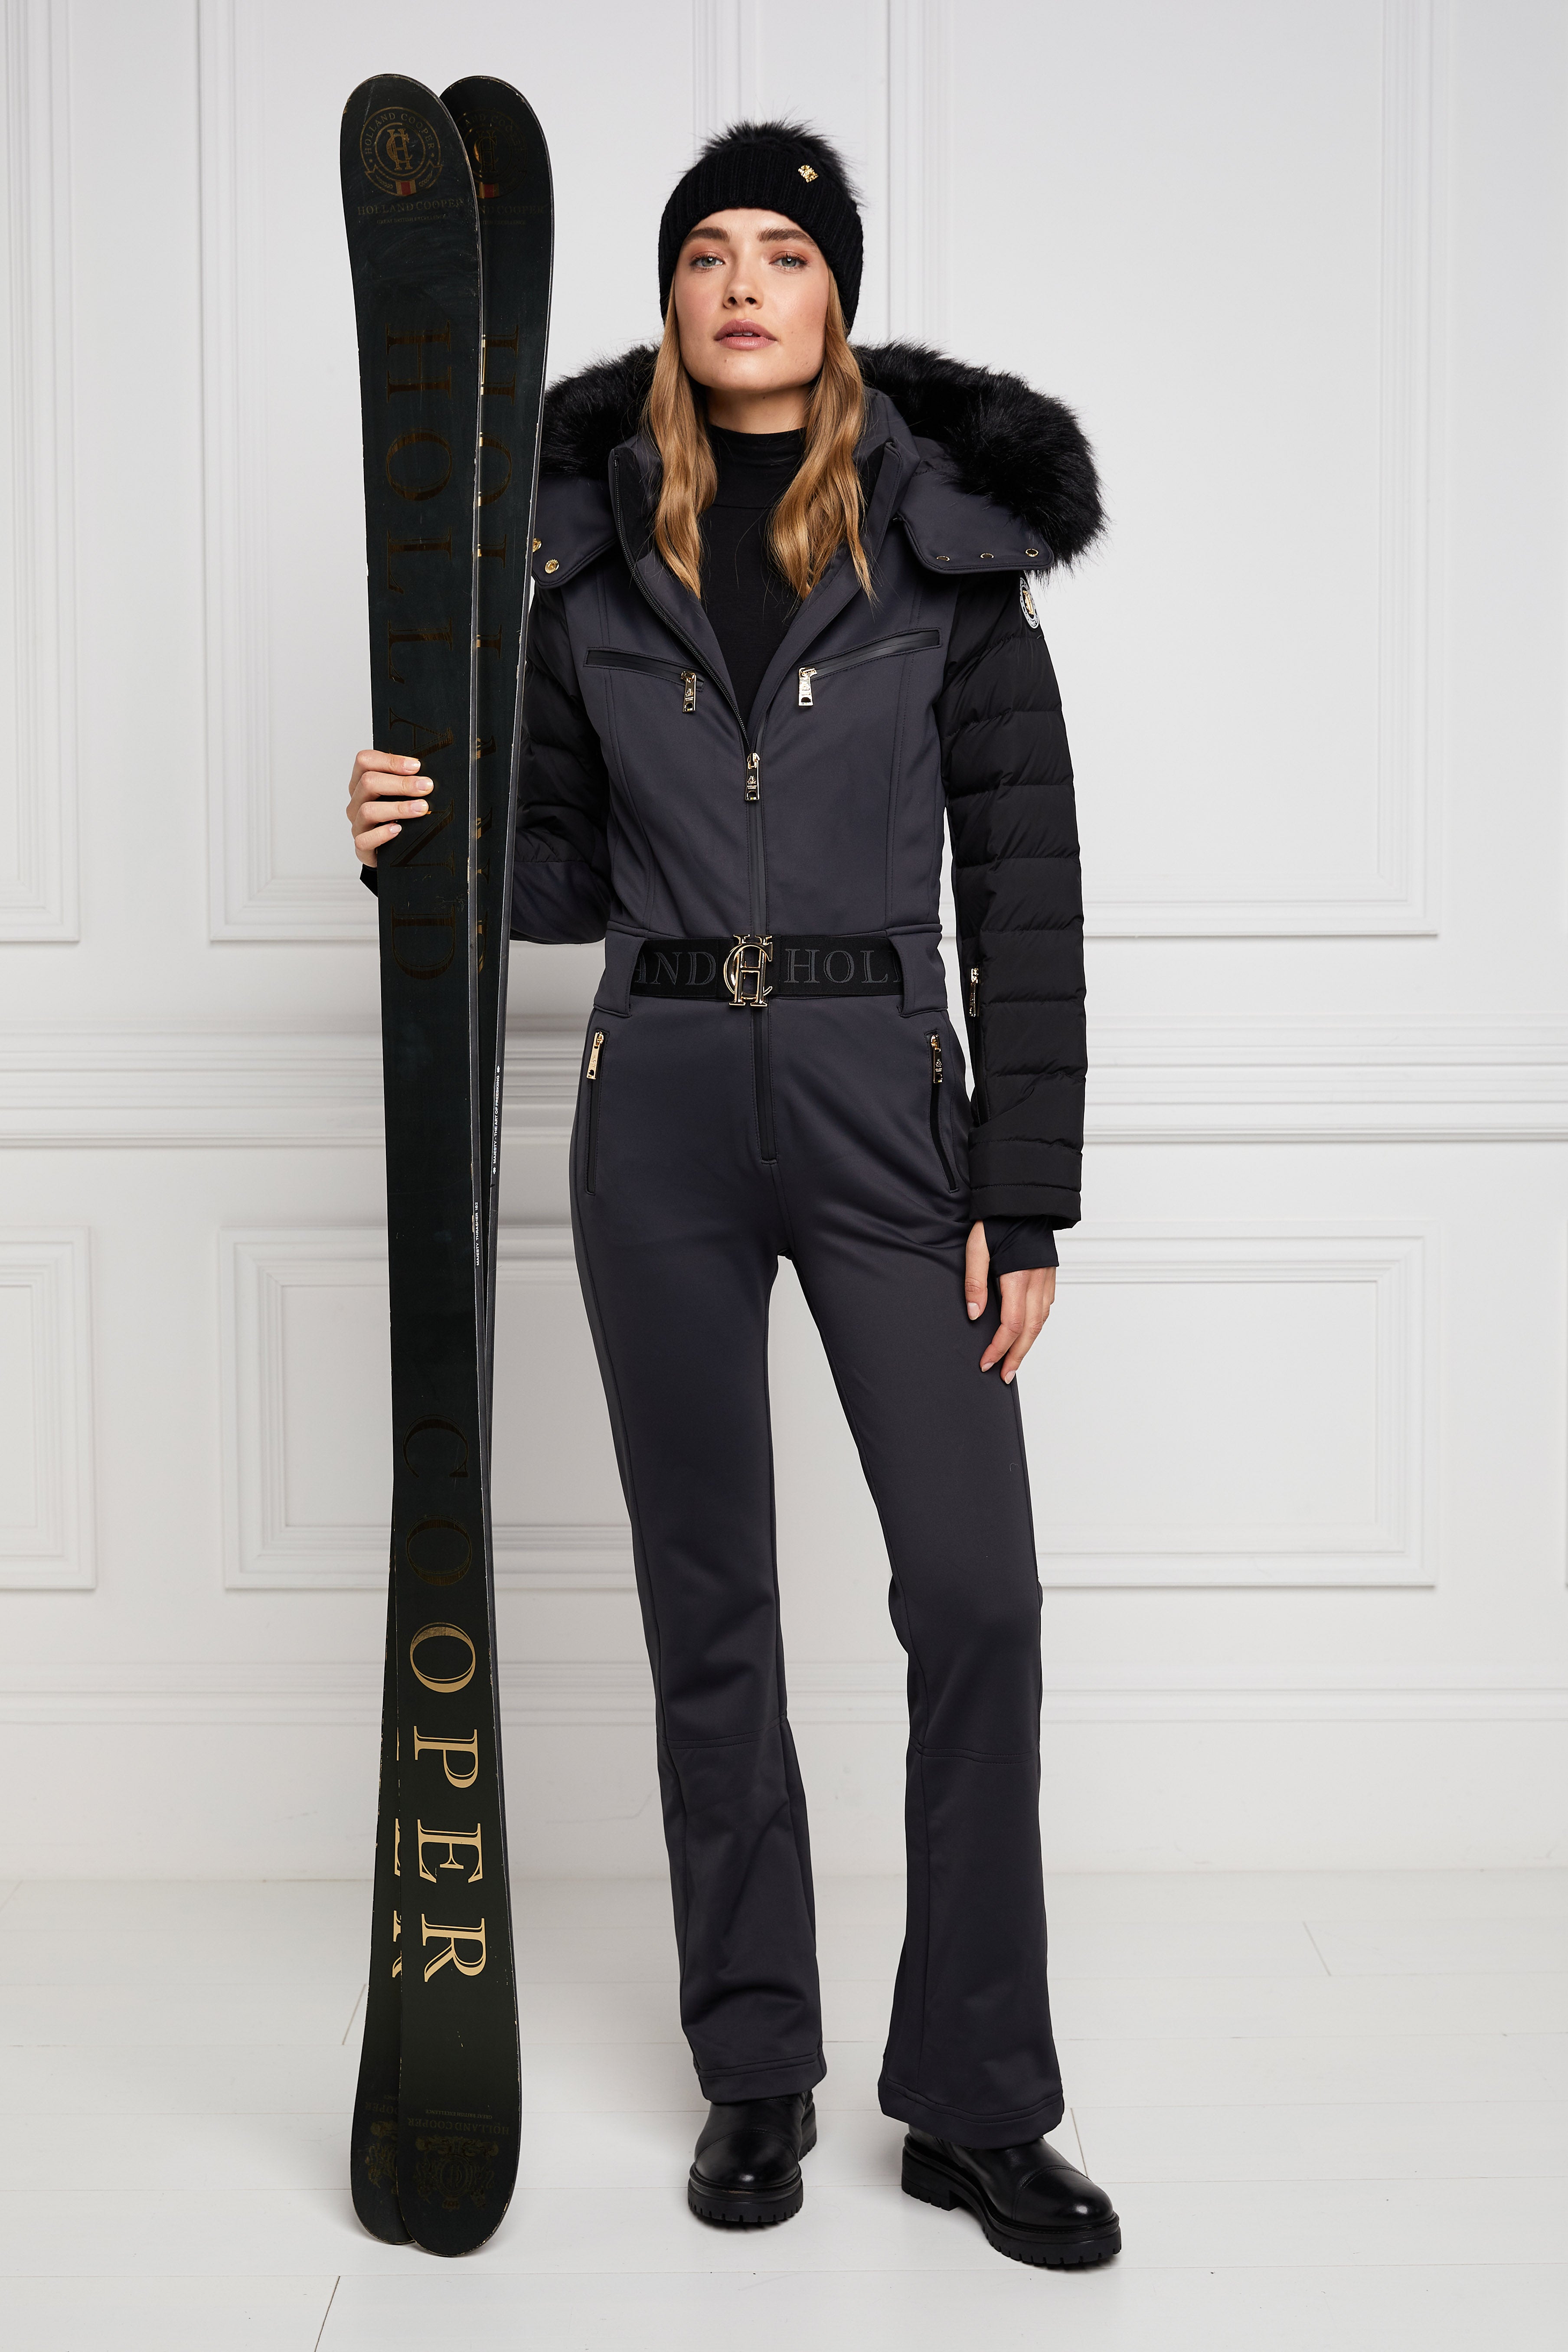 Ski Suit (Black) – Holland Cooper